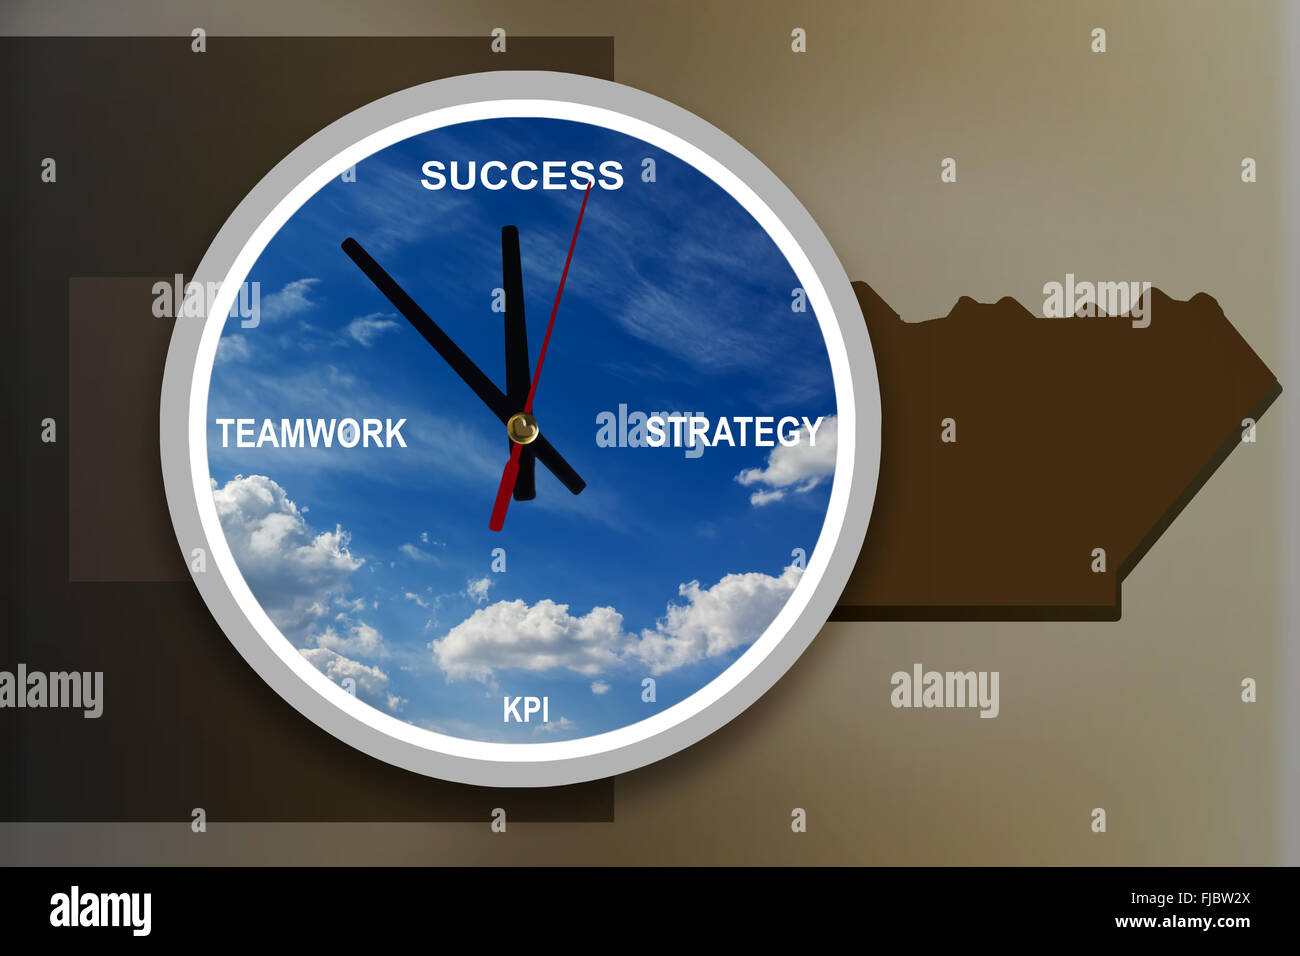 Business-Konzept-Zeit zum Erfolg mit Text-Strategie, Teamwork, KPI in Himmel und Schlüssel abstrakte grafische Hintergrund und Kopie Raum Stockfoto